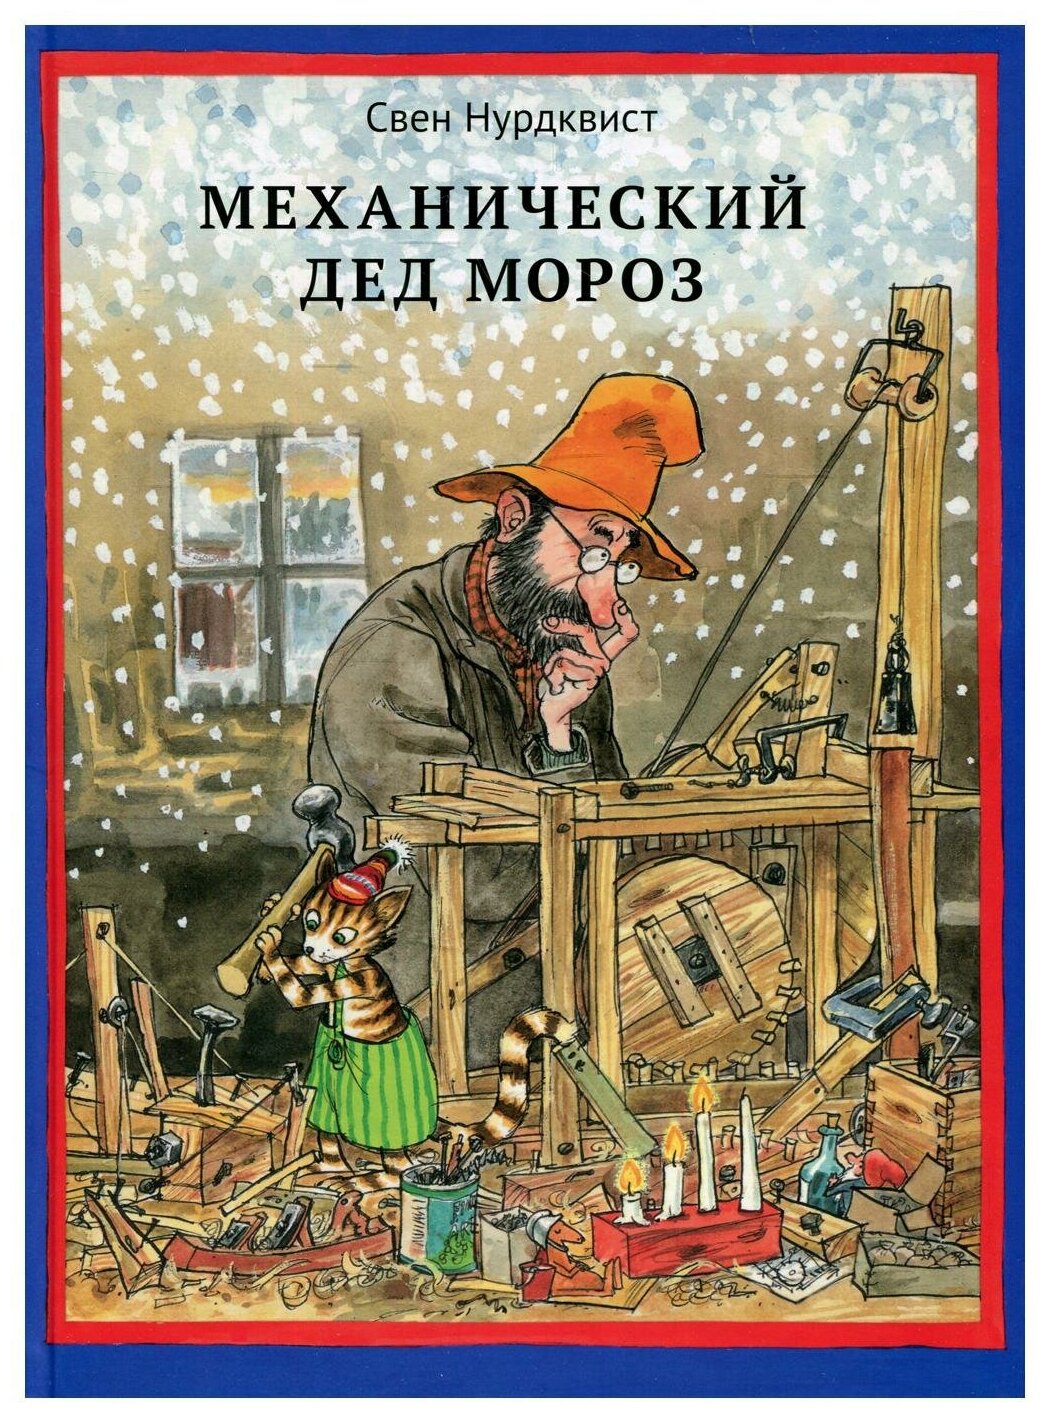 Механический Дед Мороз. 2-е изд испр. Нурдквист С. Белая ворона/ALBUS CORVUS